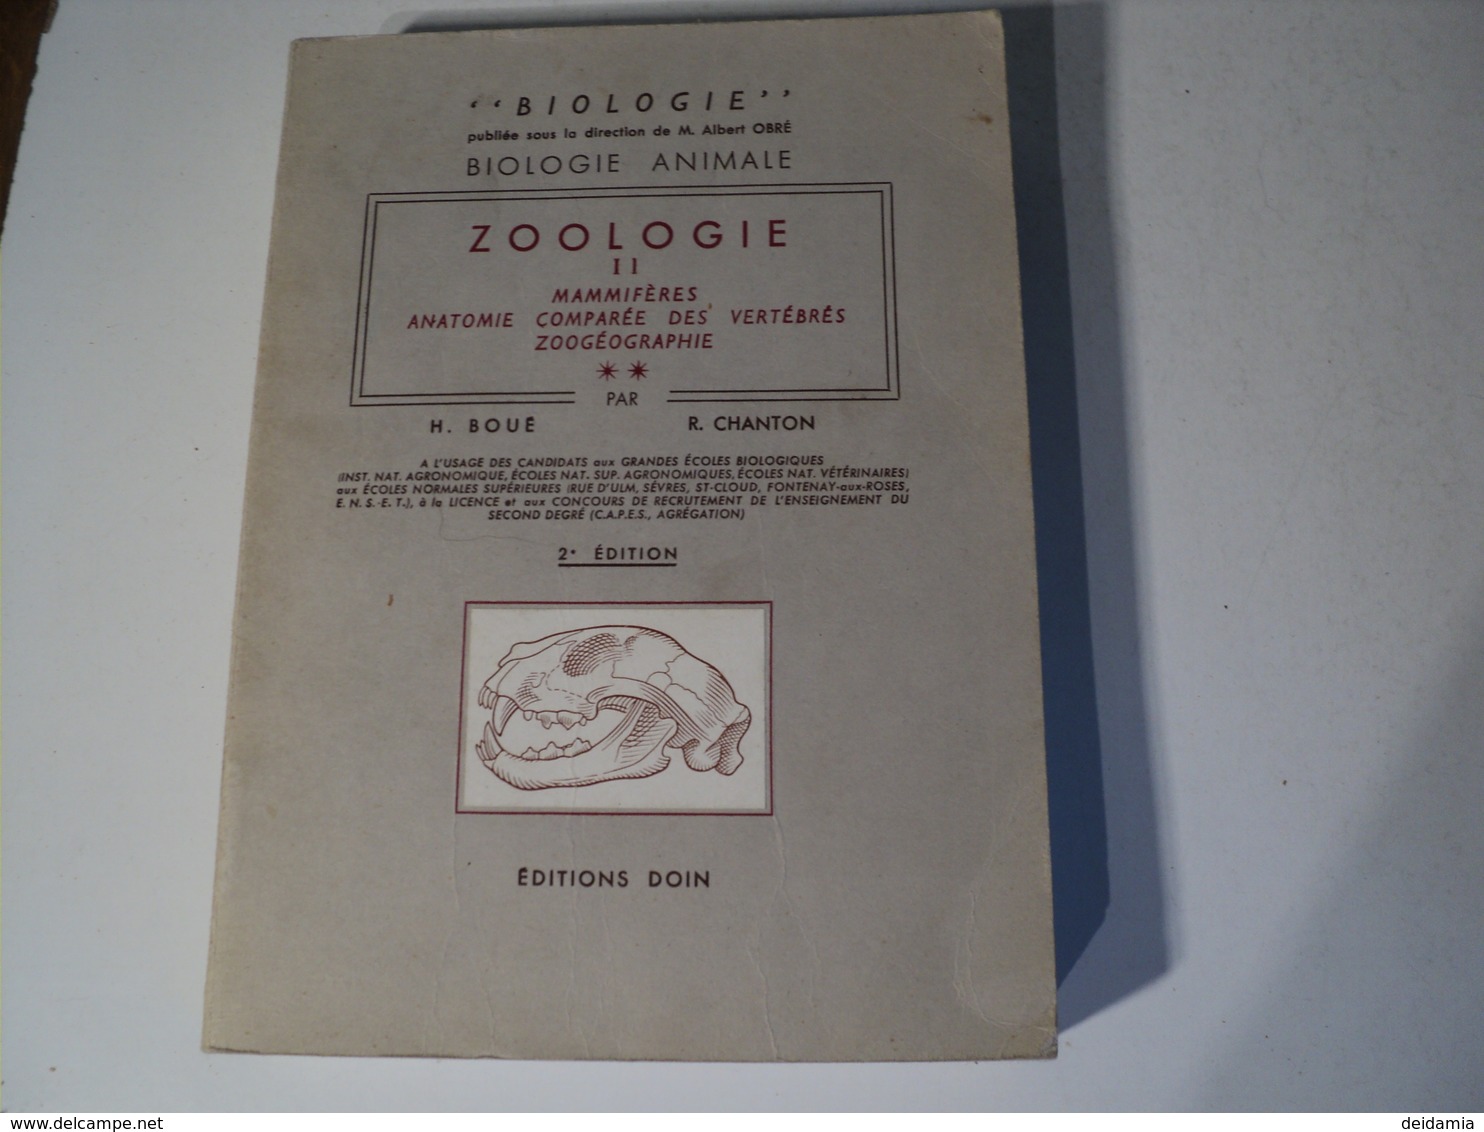 ZOOLOGIE TOME 2. MAMMIFERES. 1967. BIOLOGIE ANIMALE AUX EDITIONS DOIN PAR H. BOUE ET R. CHANTON. NOMBREUX SCHEMAS ET IL - 18 Años Y Más